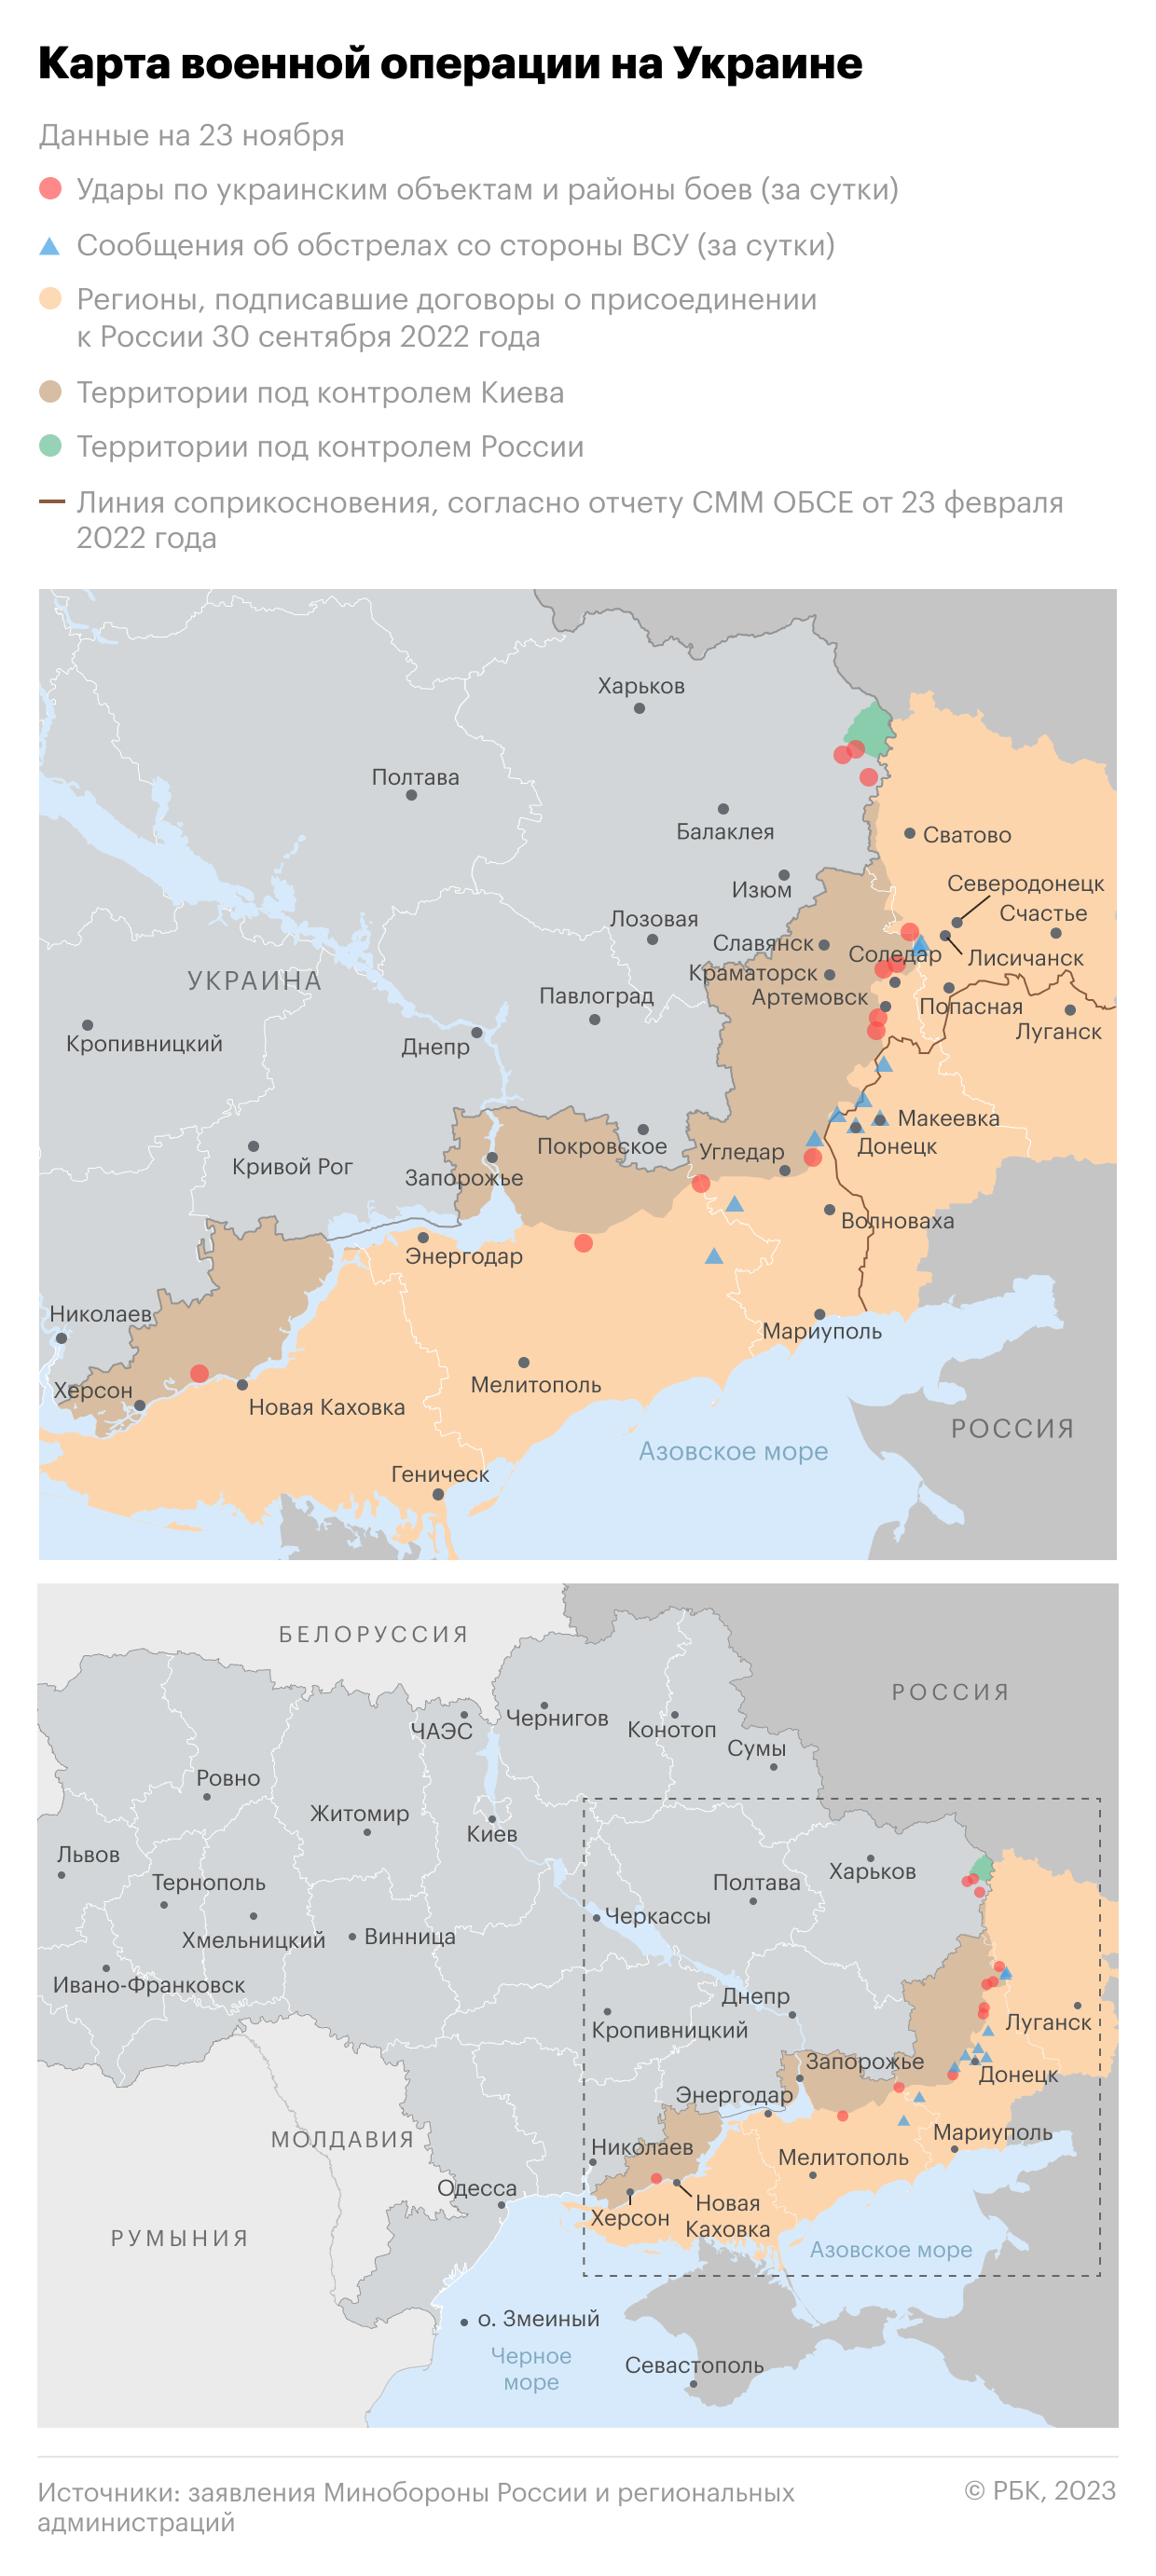 Карта завоеванных территорий на украине сегодня россией